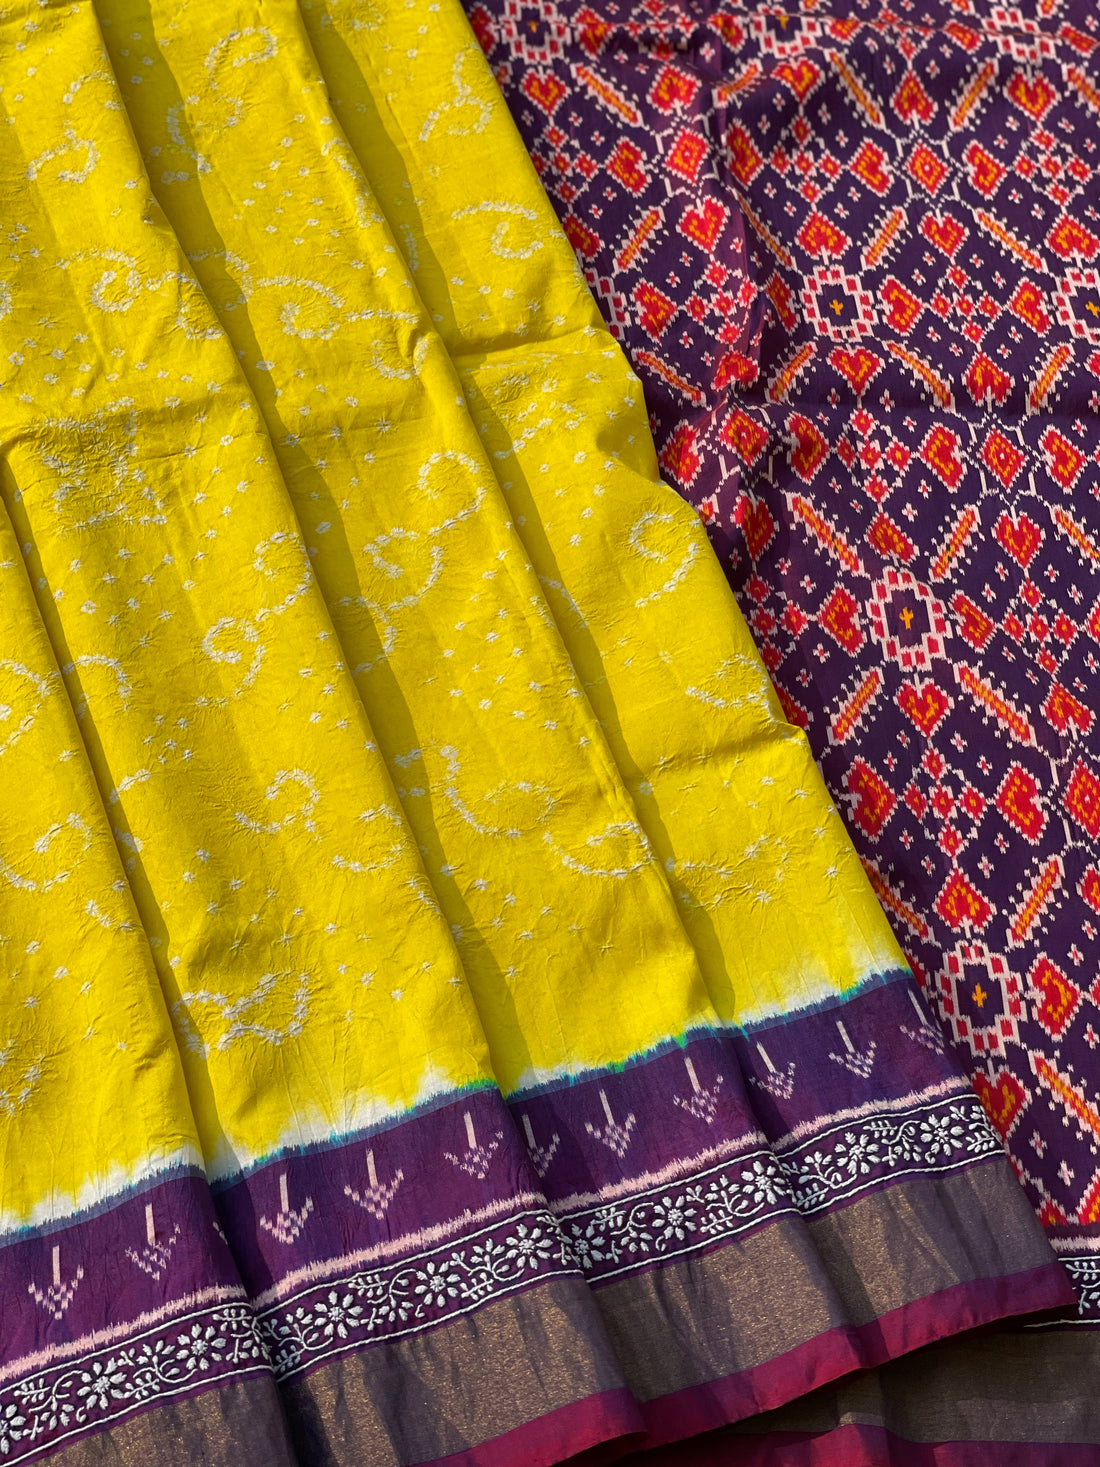 Hand knotted Rai Bhadhej with chikankari work on Tie Dyed ikkat silk saree